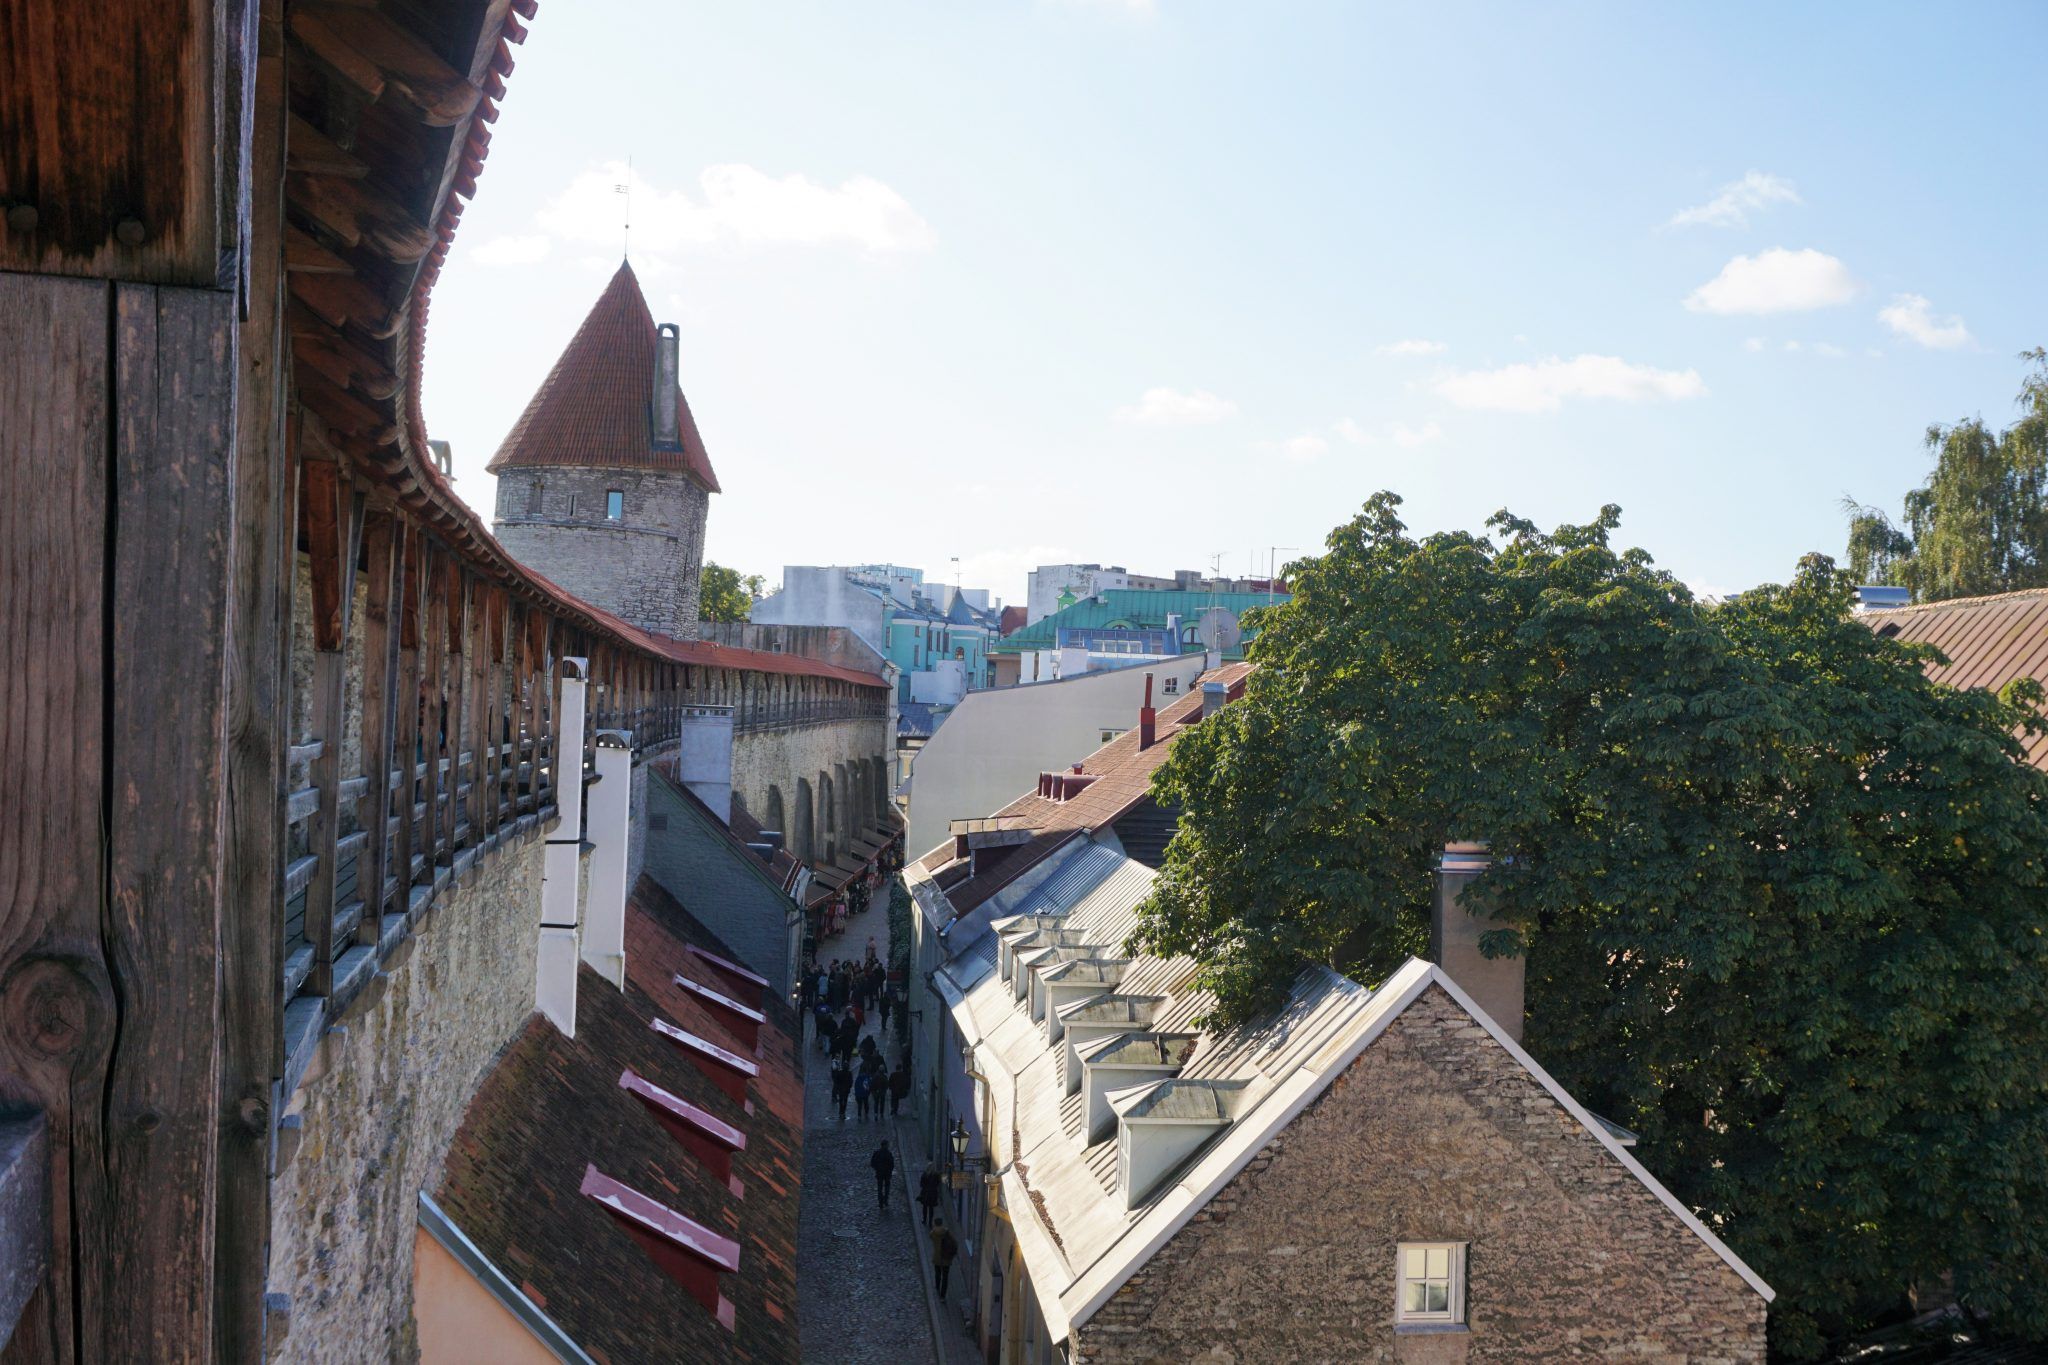 Town Wall in Tallinn, Estonia